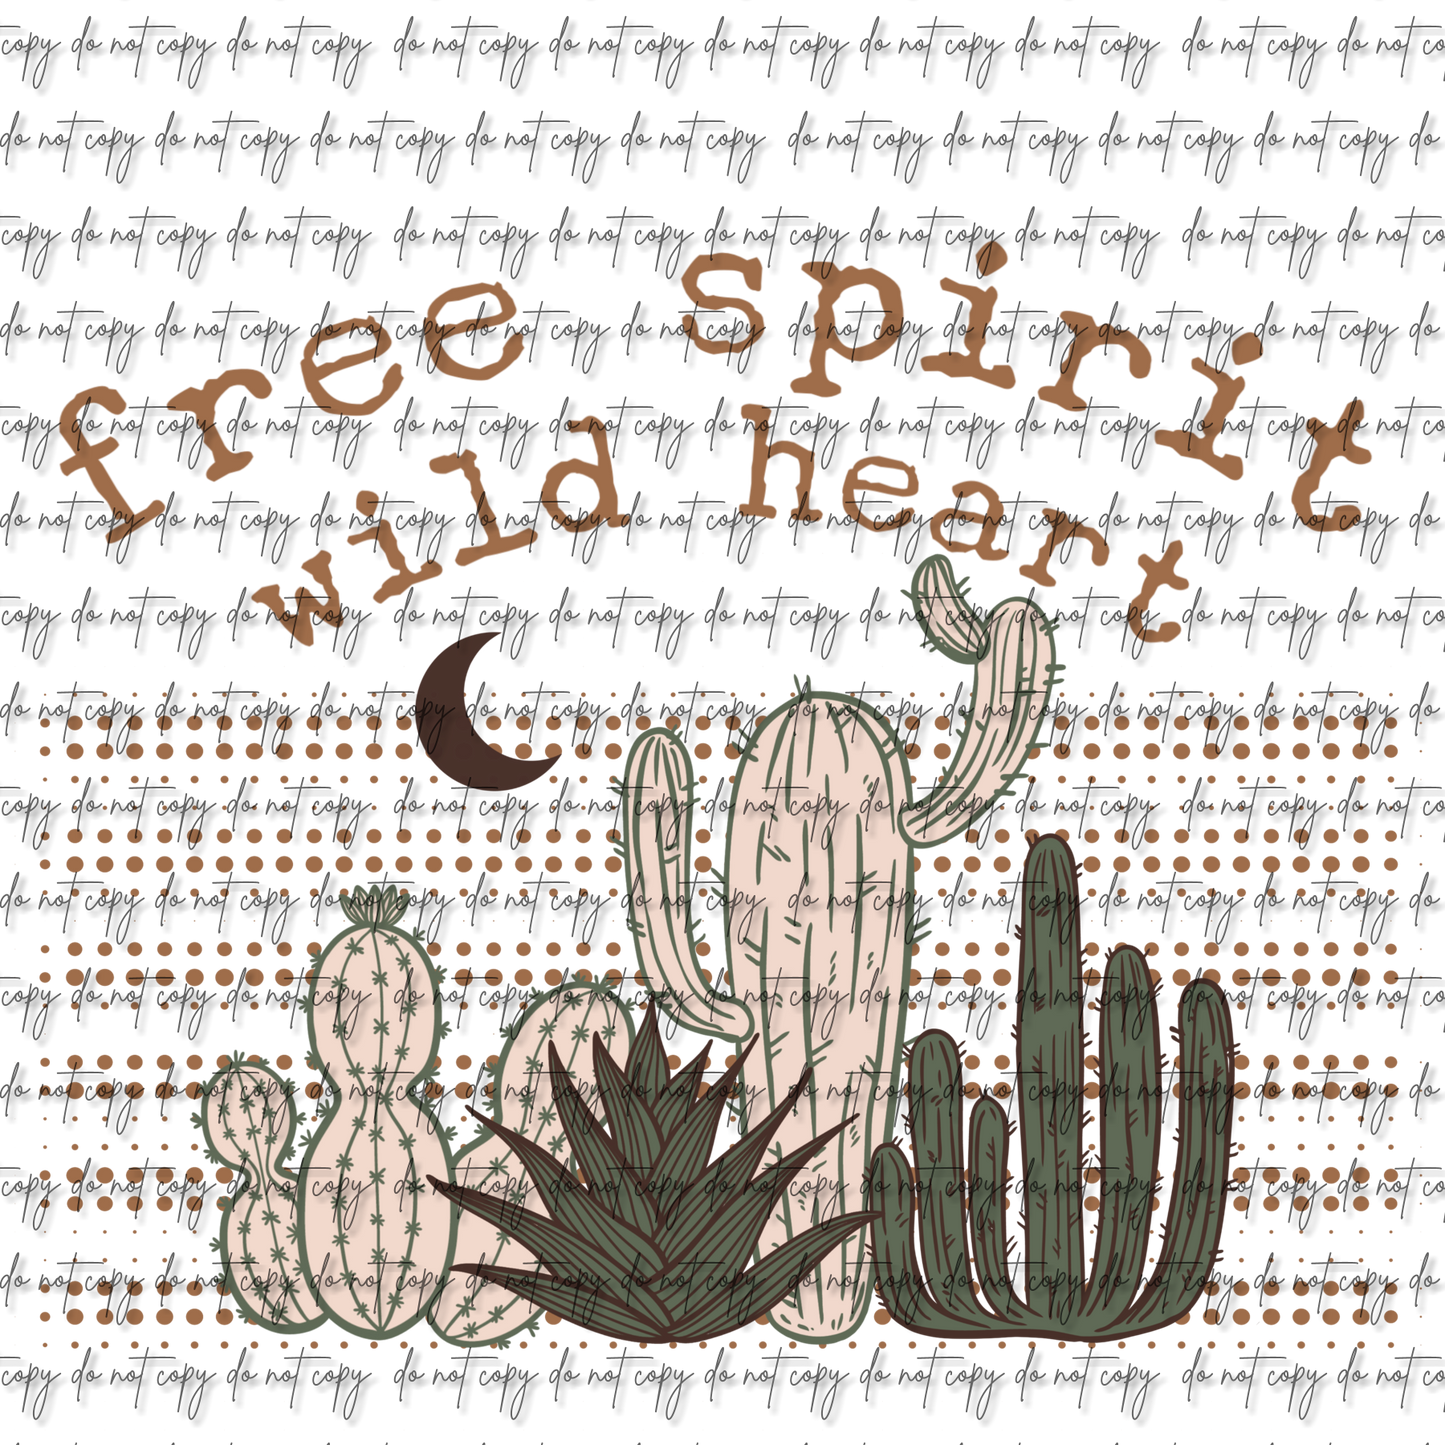 FREE SPIRIT WILD HEART DTF